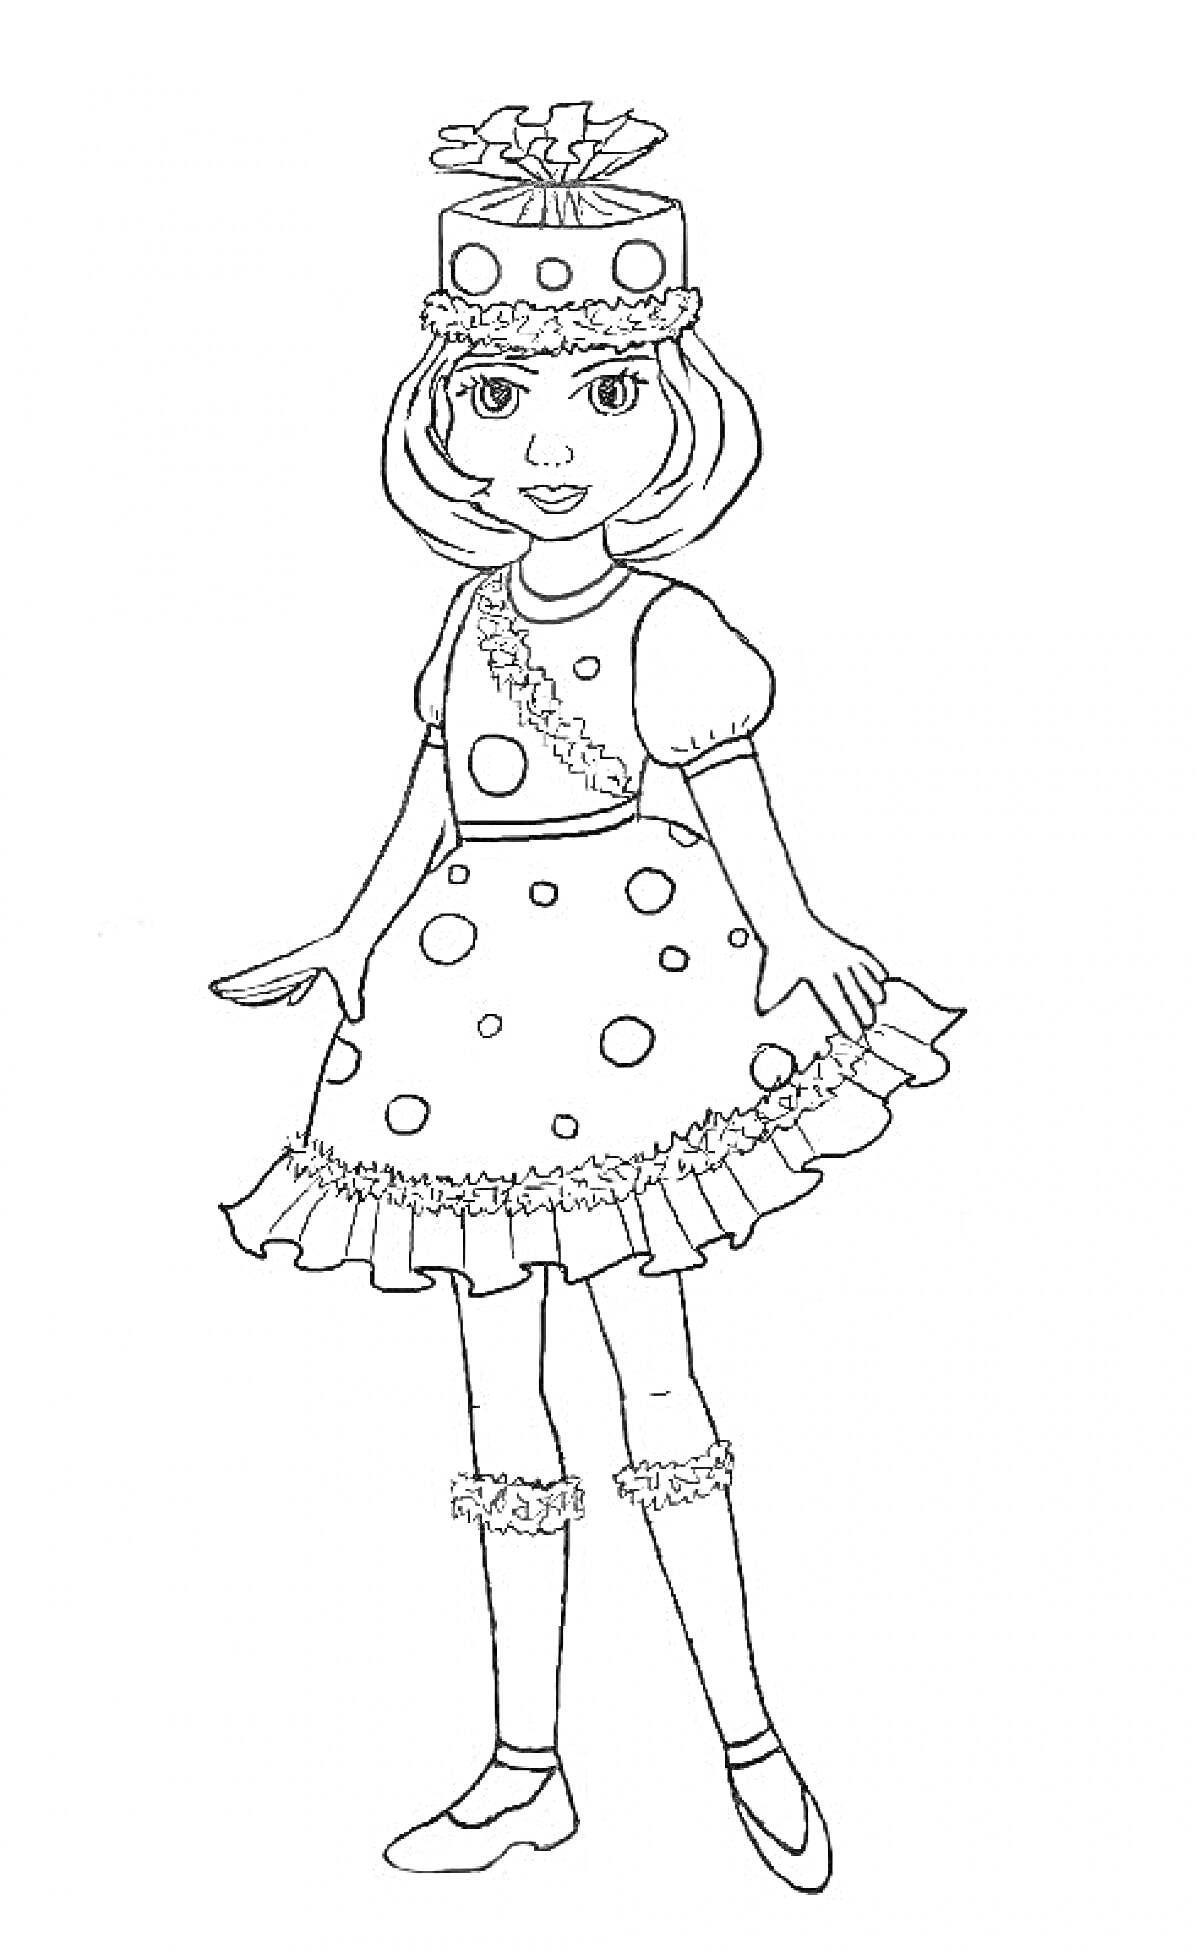  Девочка в костюме хлопушки с шапочкой и платьем в горошек, короткие рукава, оборки на подоле, носки с оборкой, туфли и рукава-фонарики